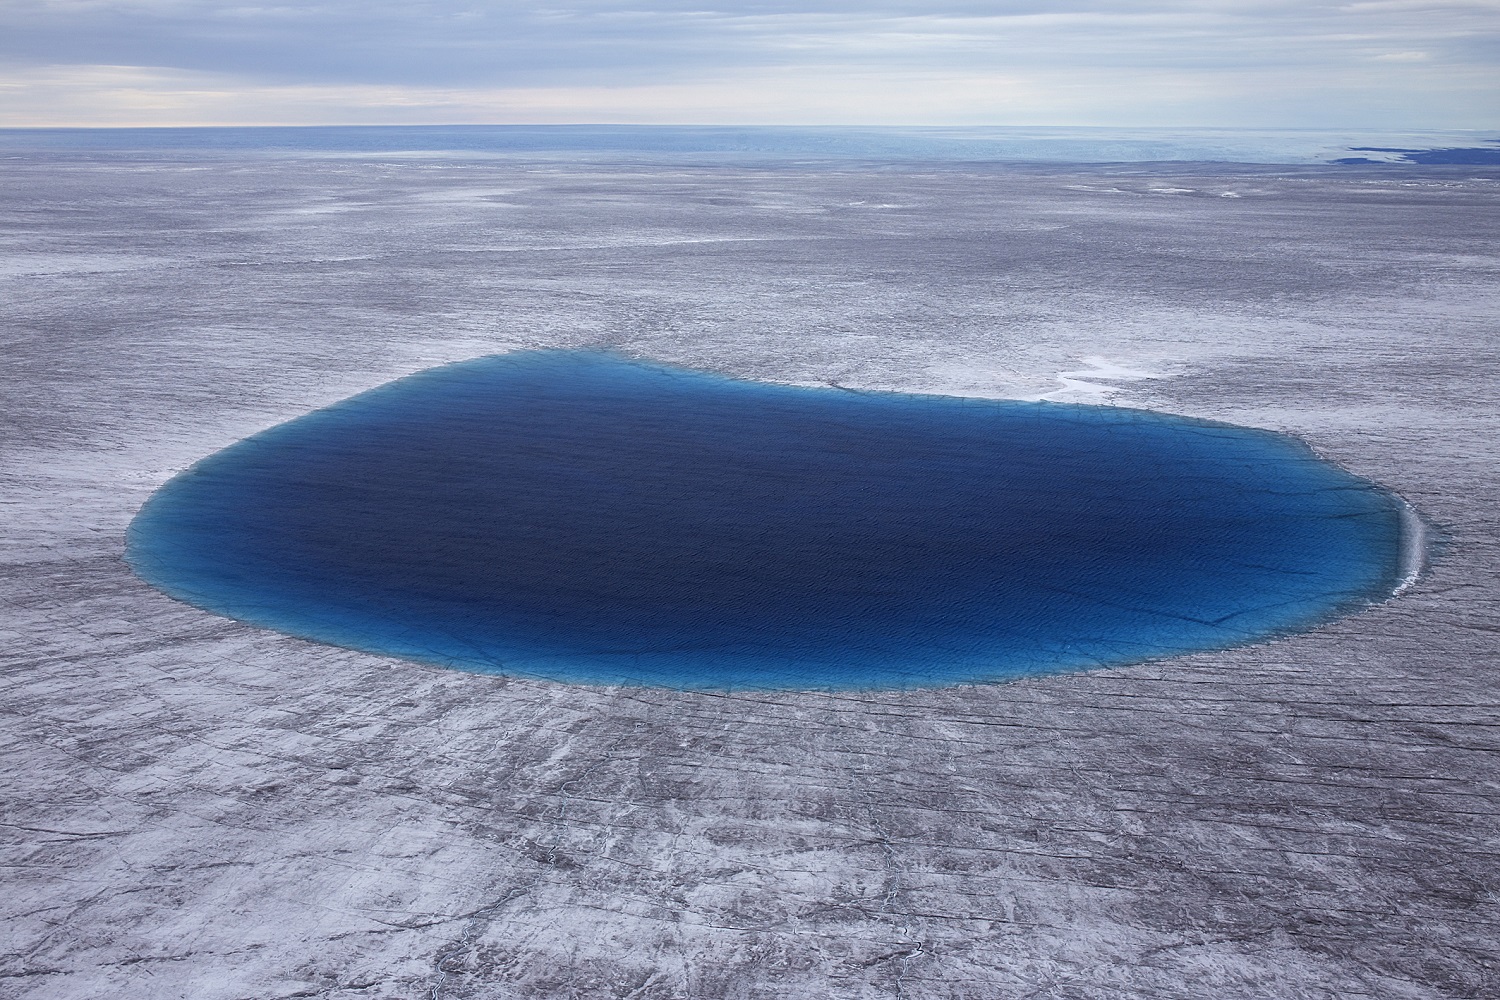 Schmelzwassersee bei N69º20’/W49º20’ auf dem grönländischen Inlandeis von Sermersuaq (UNESCO Weltnaturerbe), Grönland. August 2014